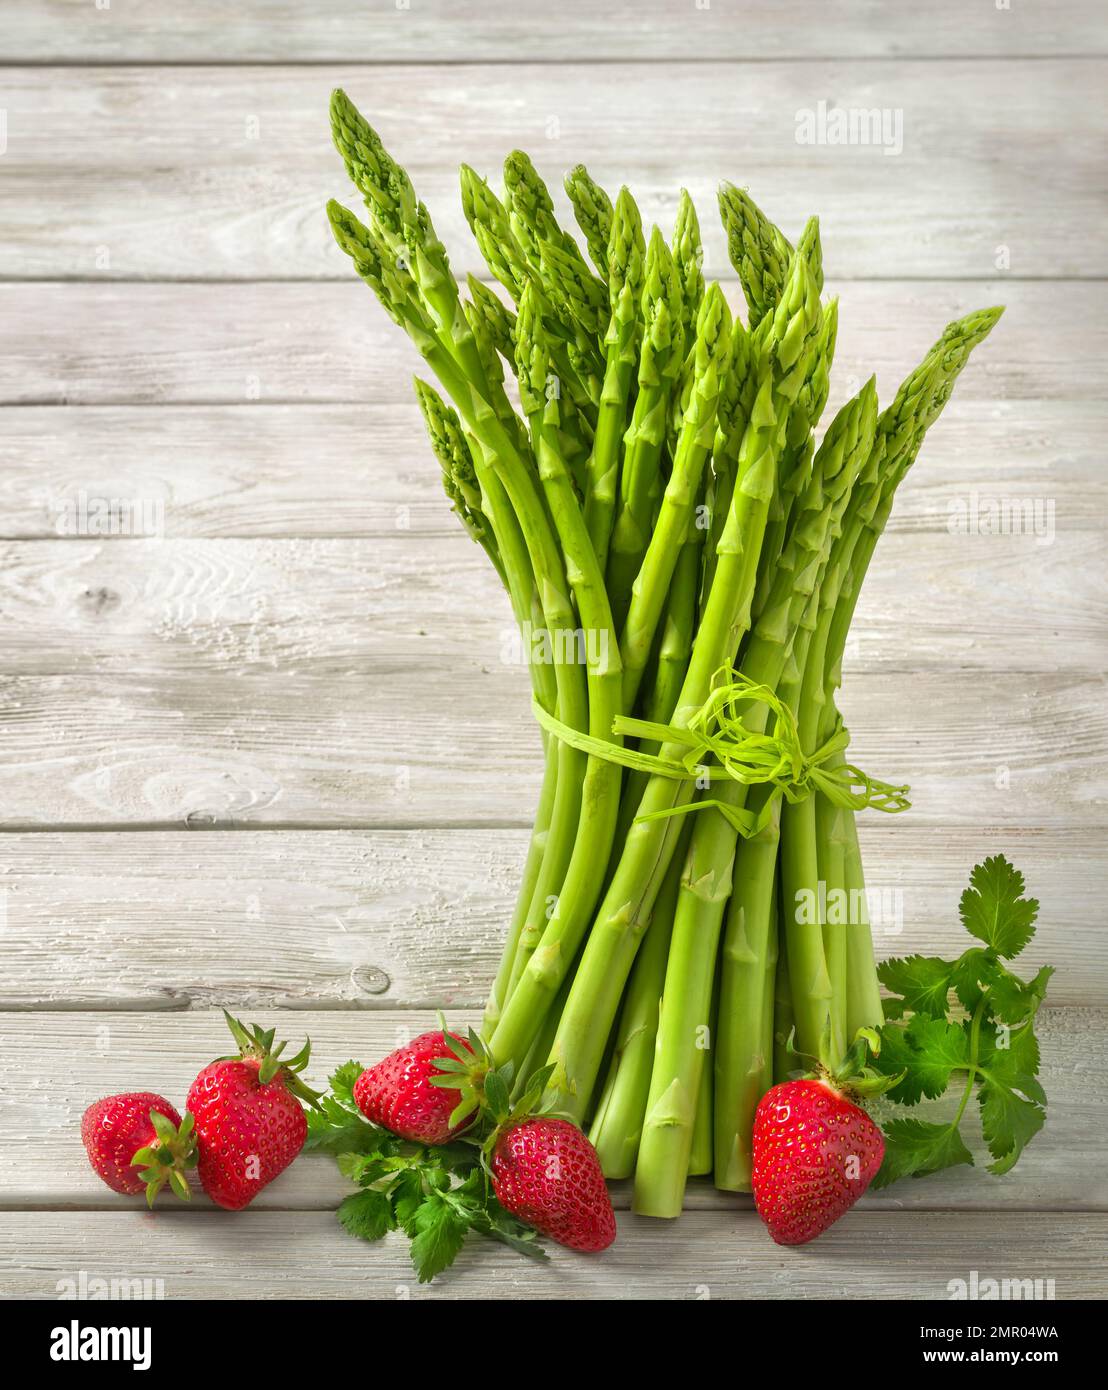 Grüner roher Spargel, dekoriert mit frischen Erdbeeren auf hellem hellen Holzhintergrund, vertikales Format Stockfoto